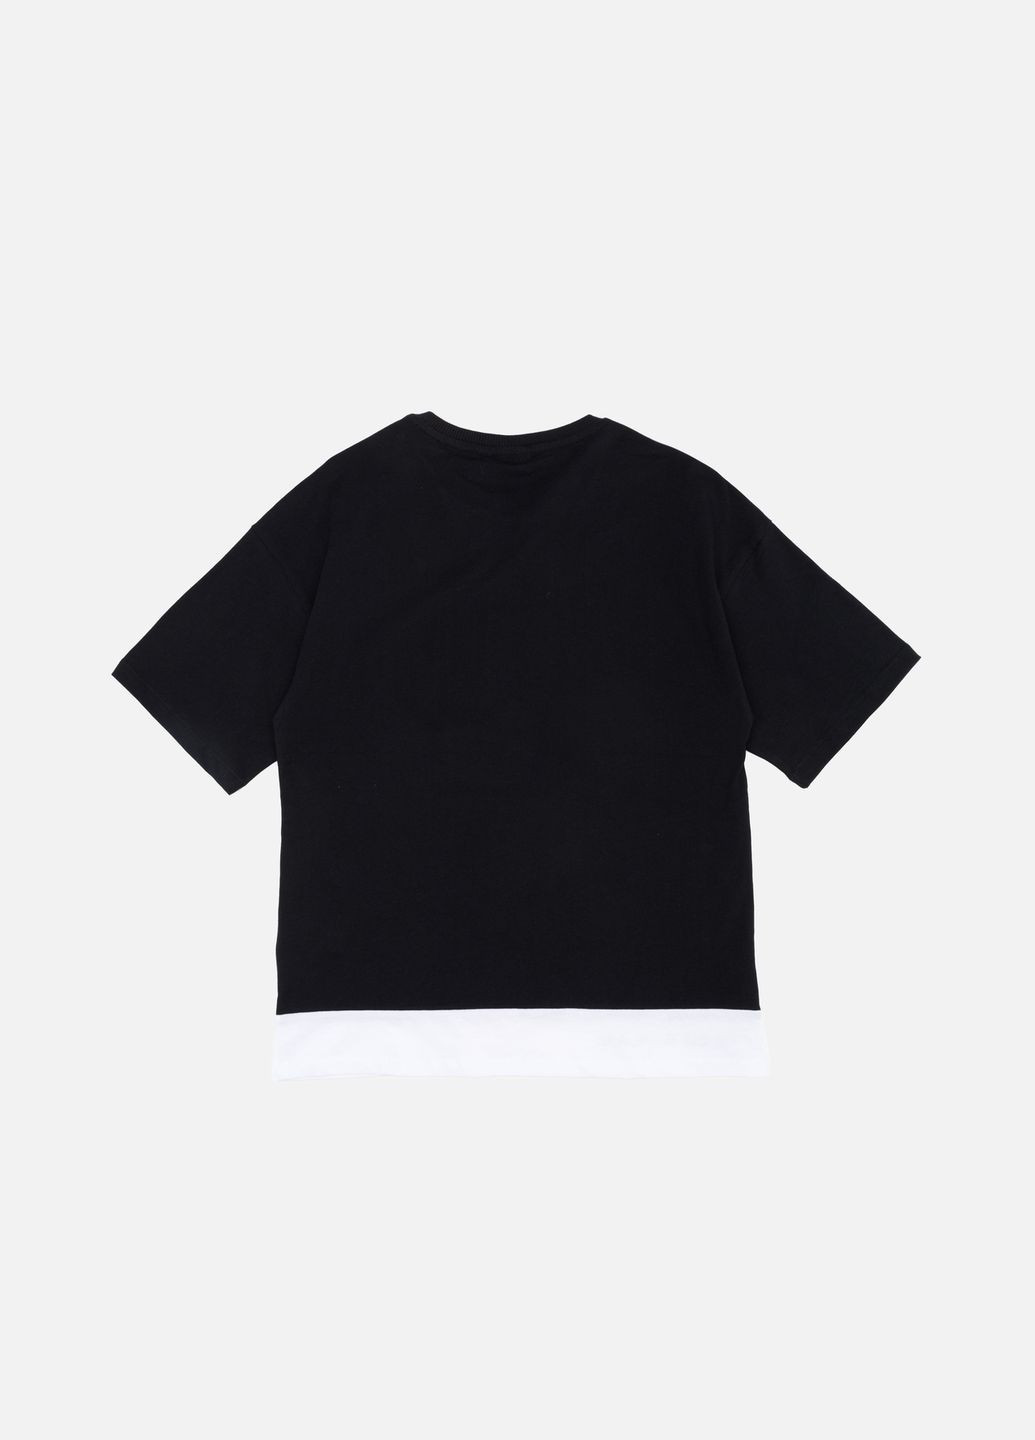 Черная летняя футболка с коротким рукавом для мальчика цвет черный цб-00242373 Beneti